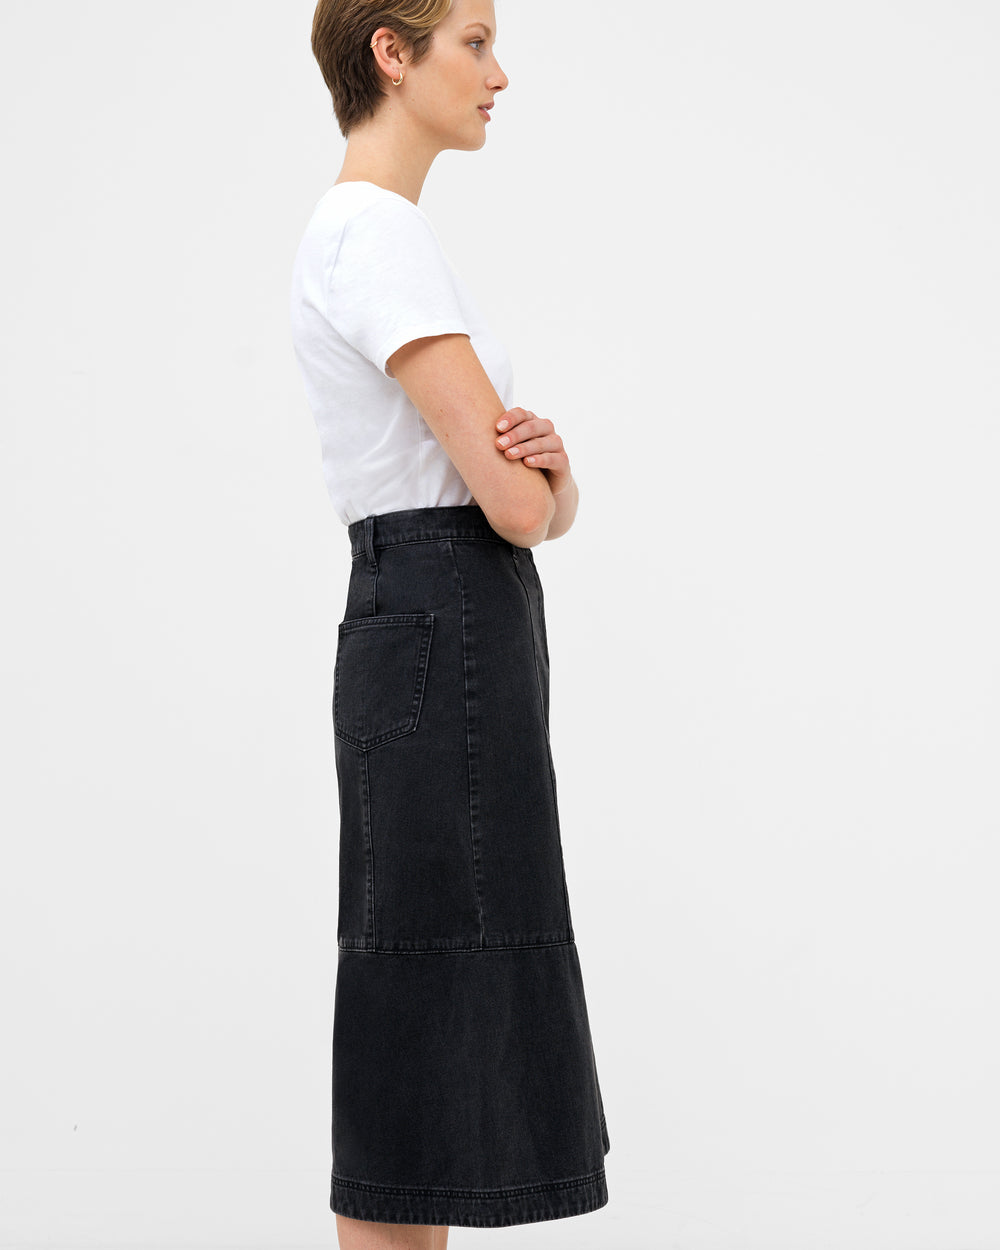 Washed Black Denim Skirt - Button-Front Denim Skirt - Mini Skirt - Lulus